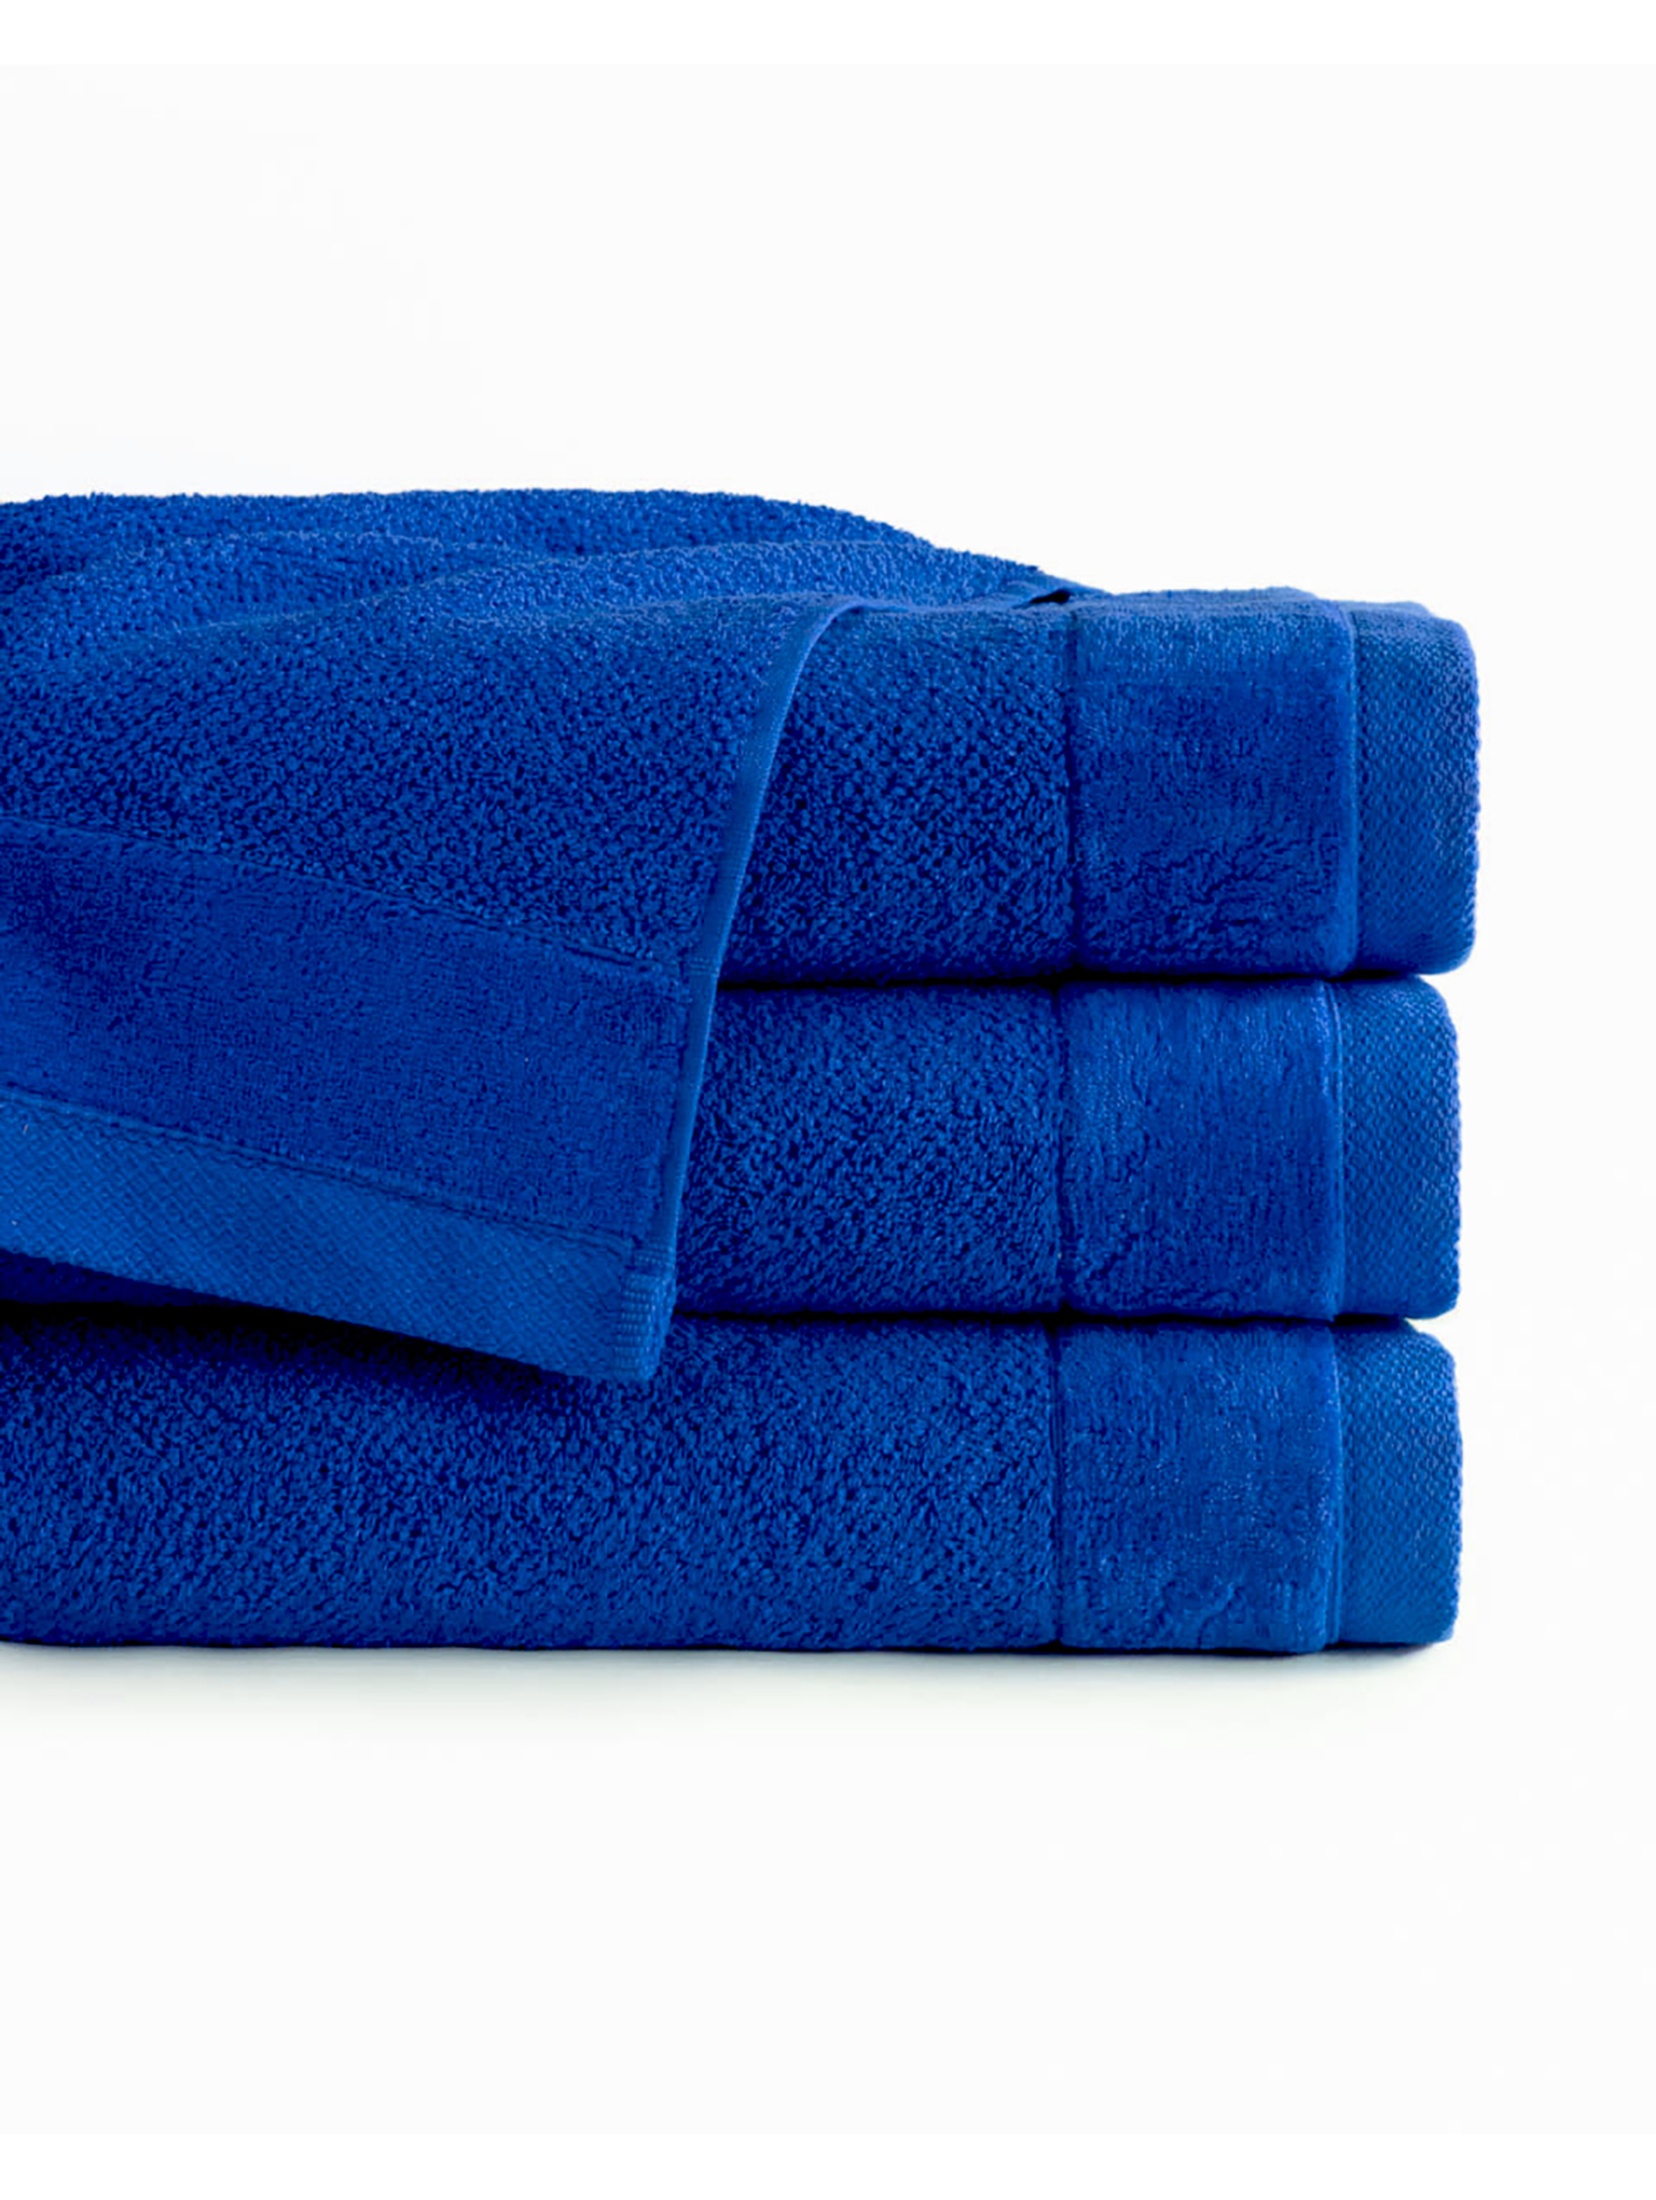 Ręcznik VITO niebieski 1 szt. 50x90  cm